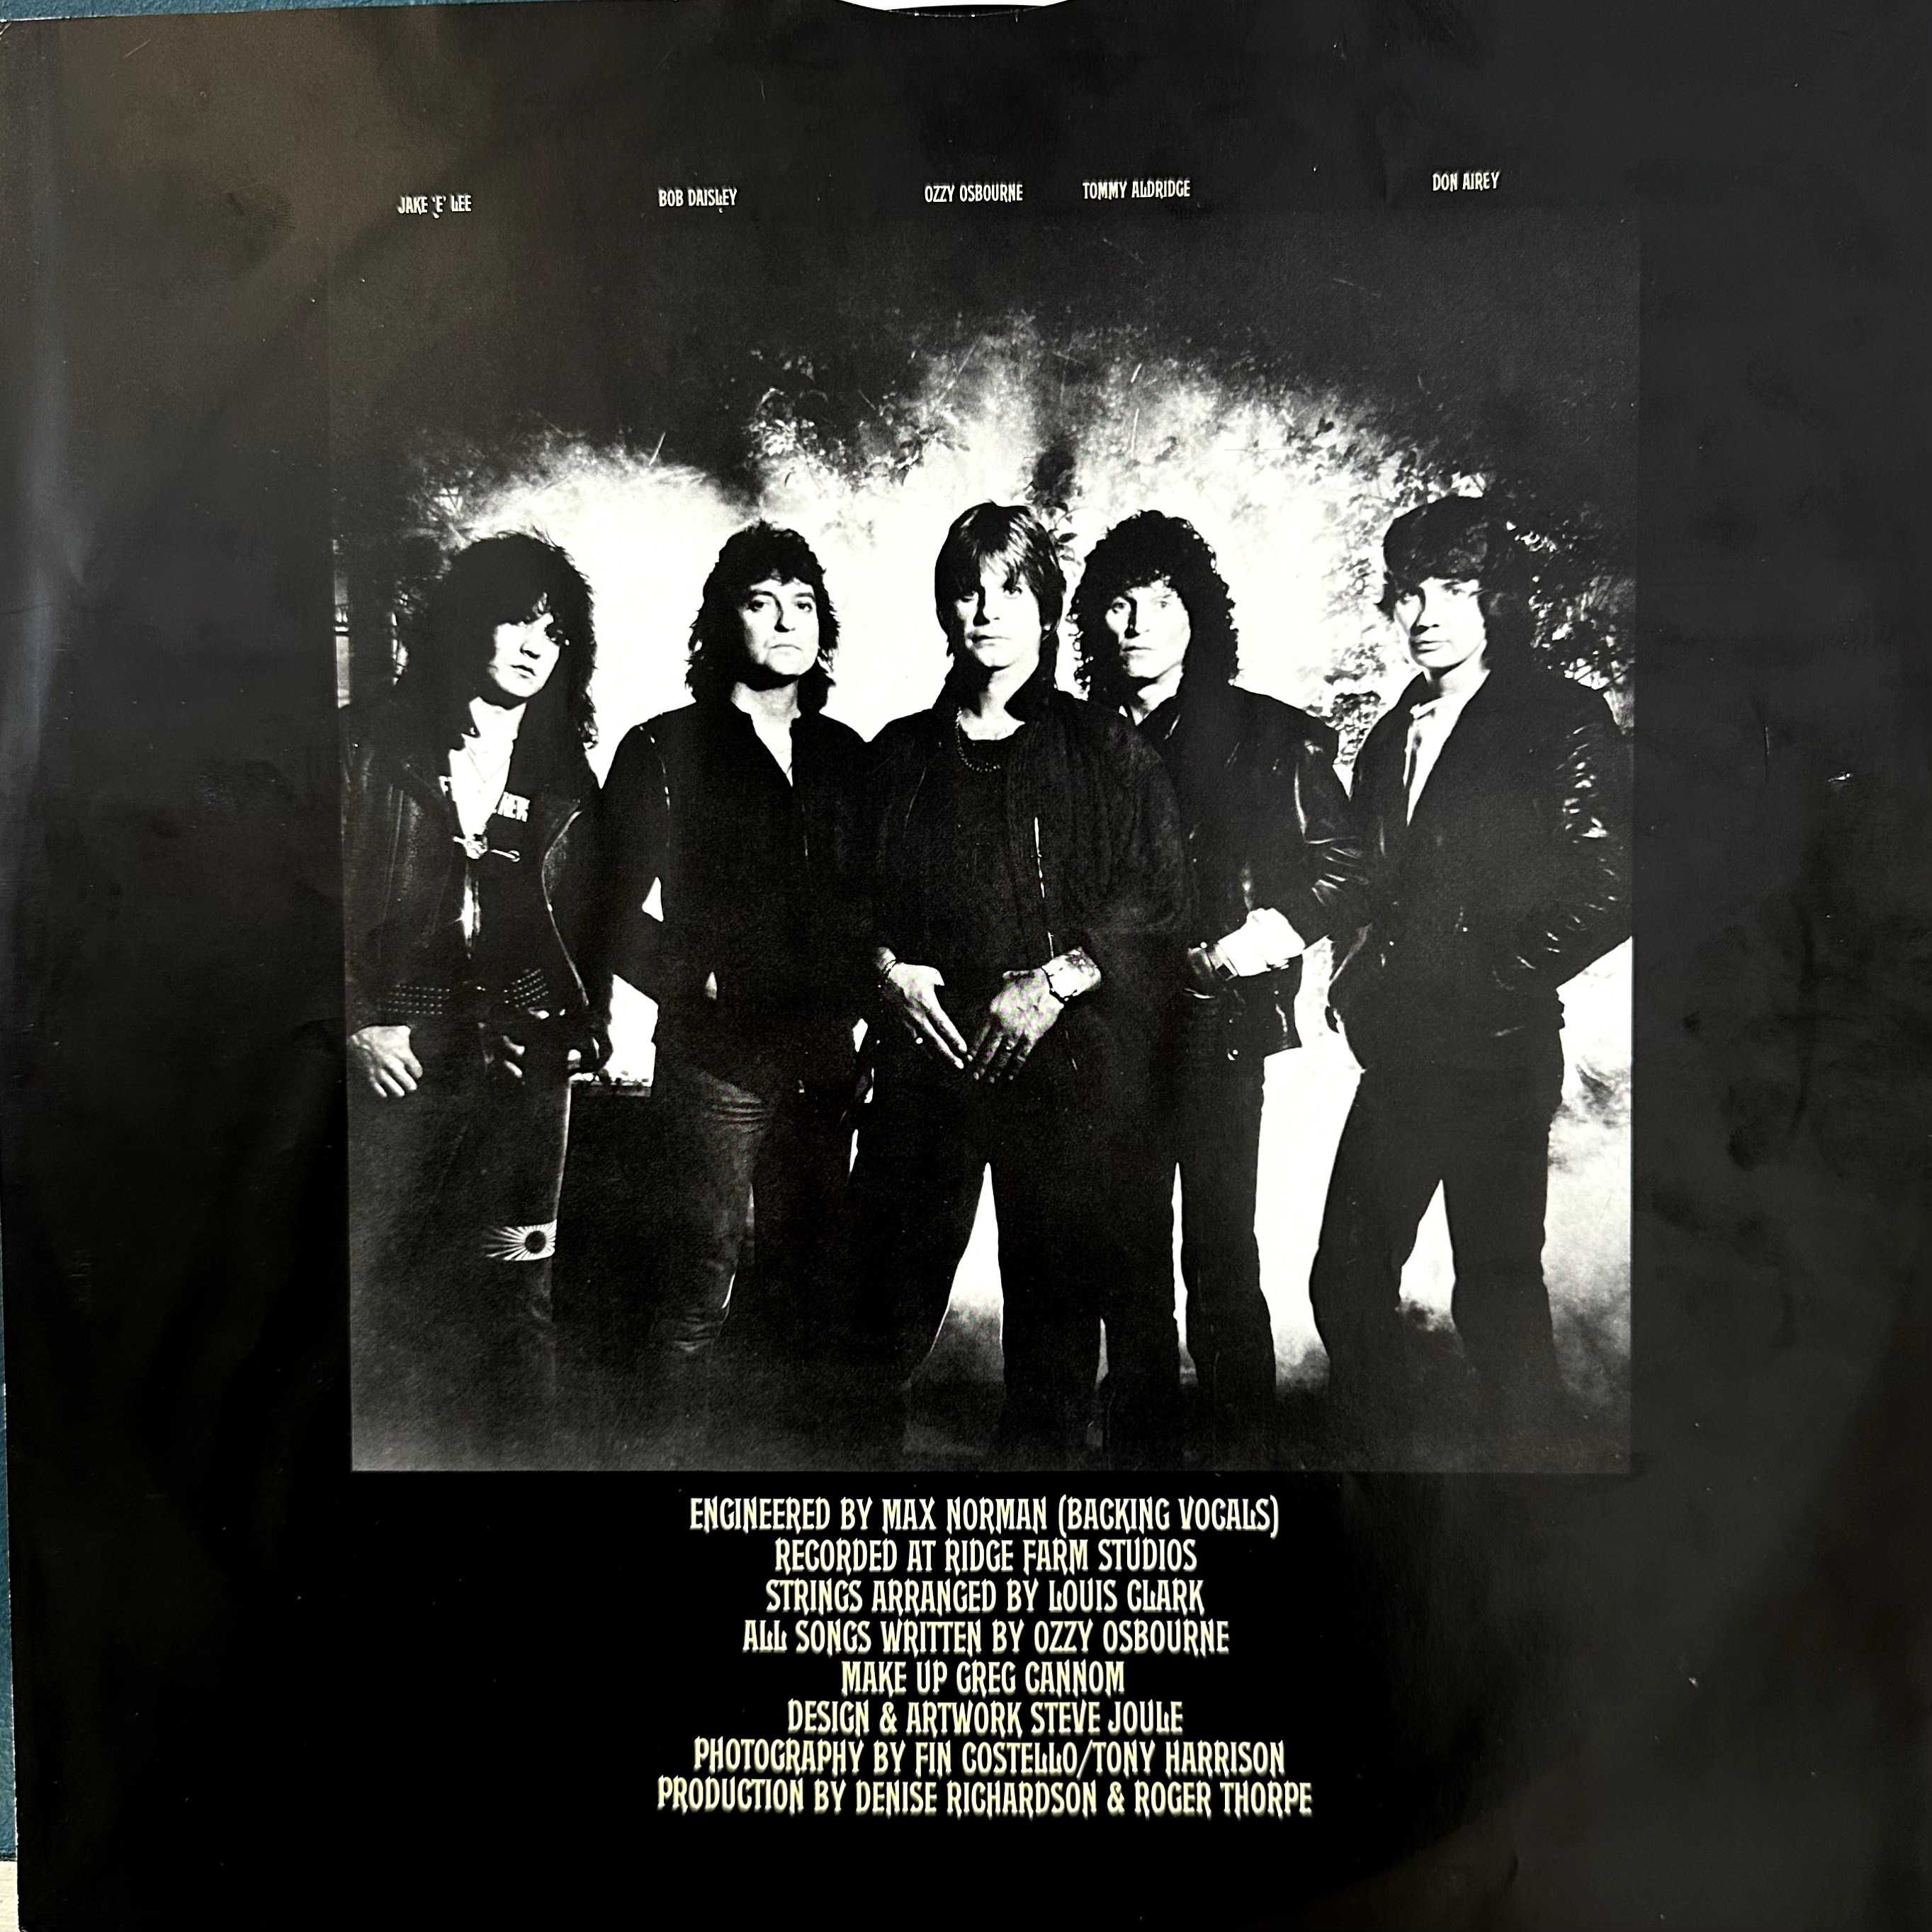 Ozzy Osbourne - Bark at the Moon (Vinyl, 1983, Holland)